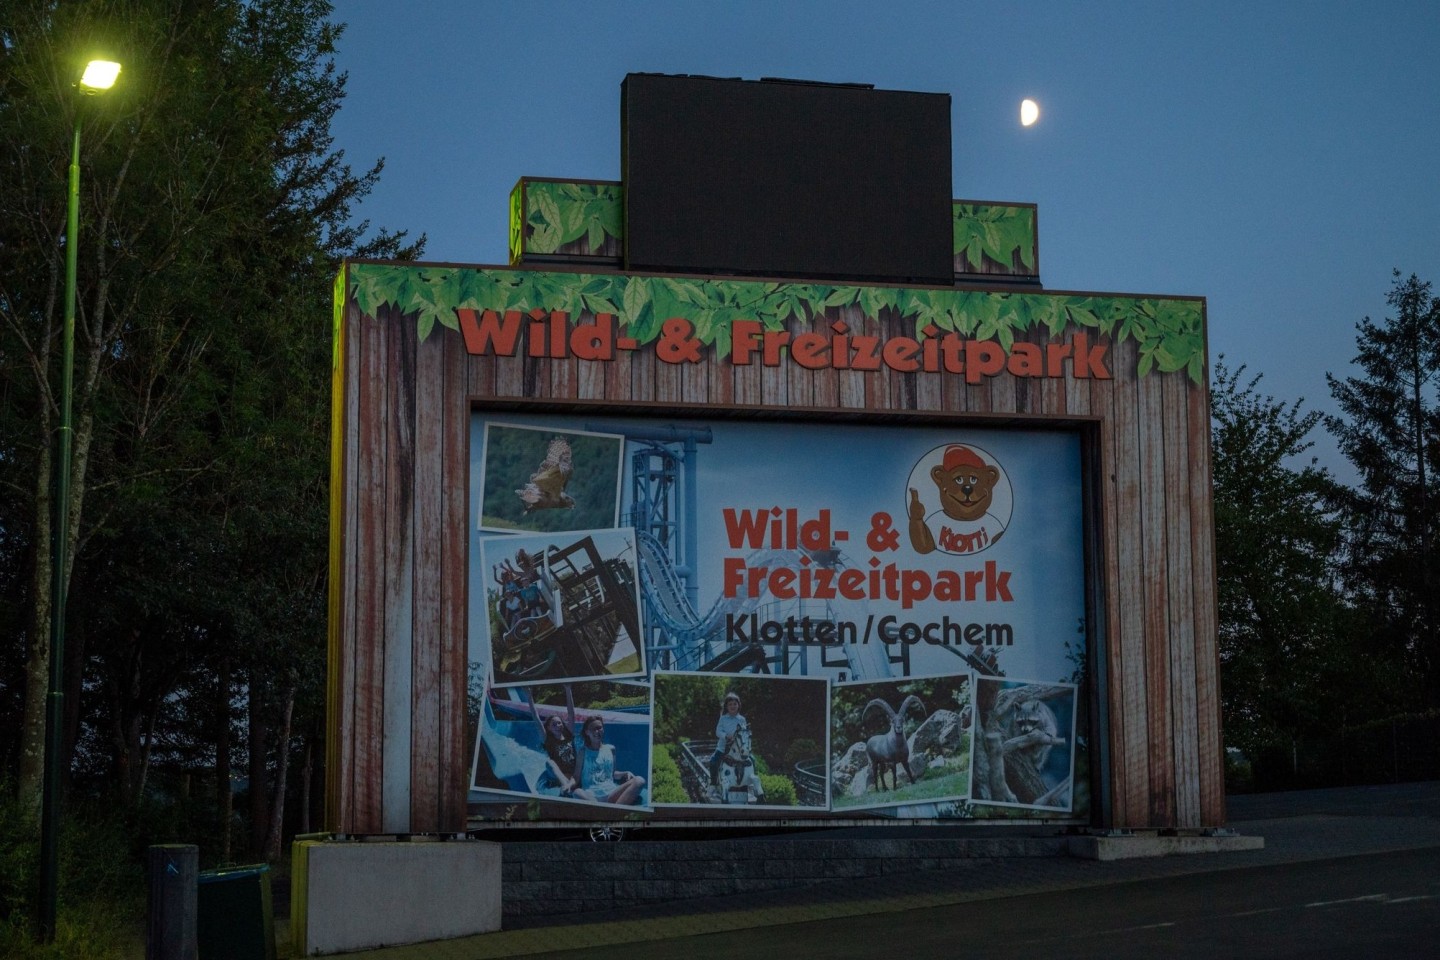 Ein Schild in der Nähe des Eingangs weist auf Ein- und Ausgang des Wild-und Freizeitparks hin. Dort ist eine Frau aus dem Saarland auf einer Achterbahn tödlich verunglückt.